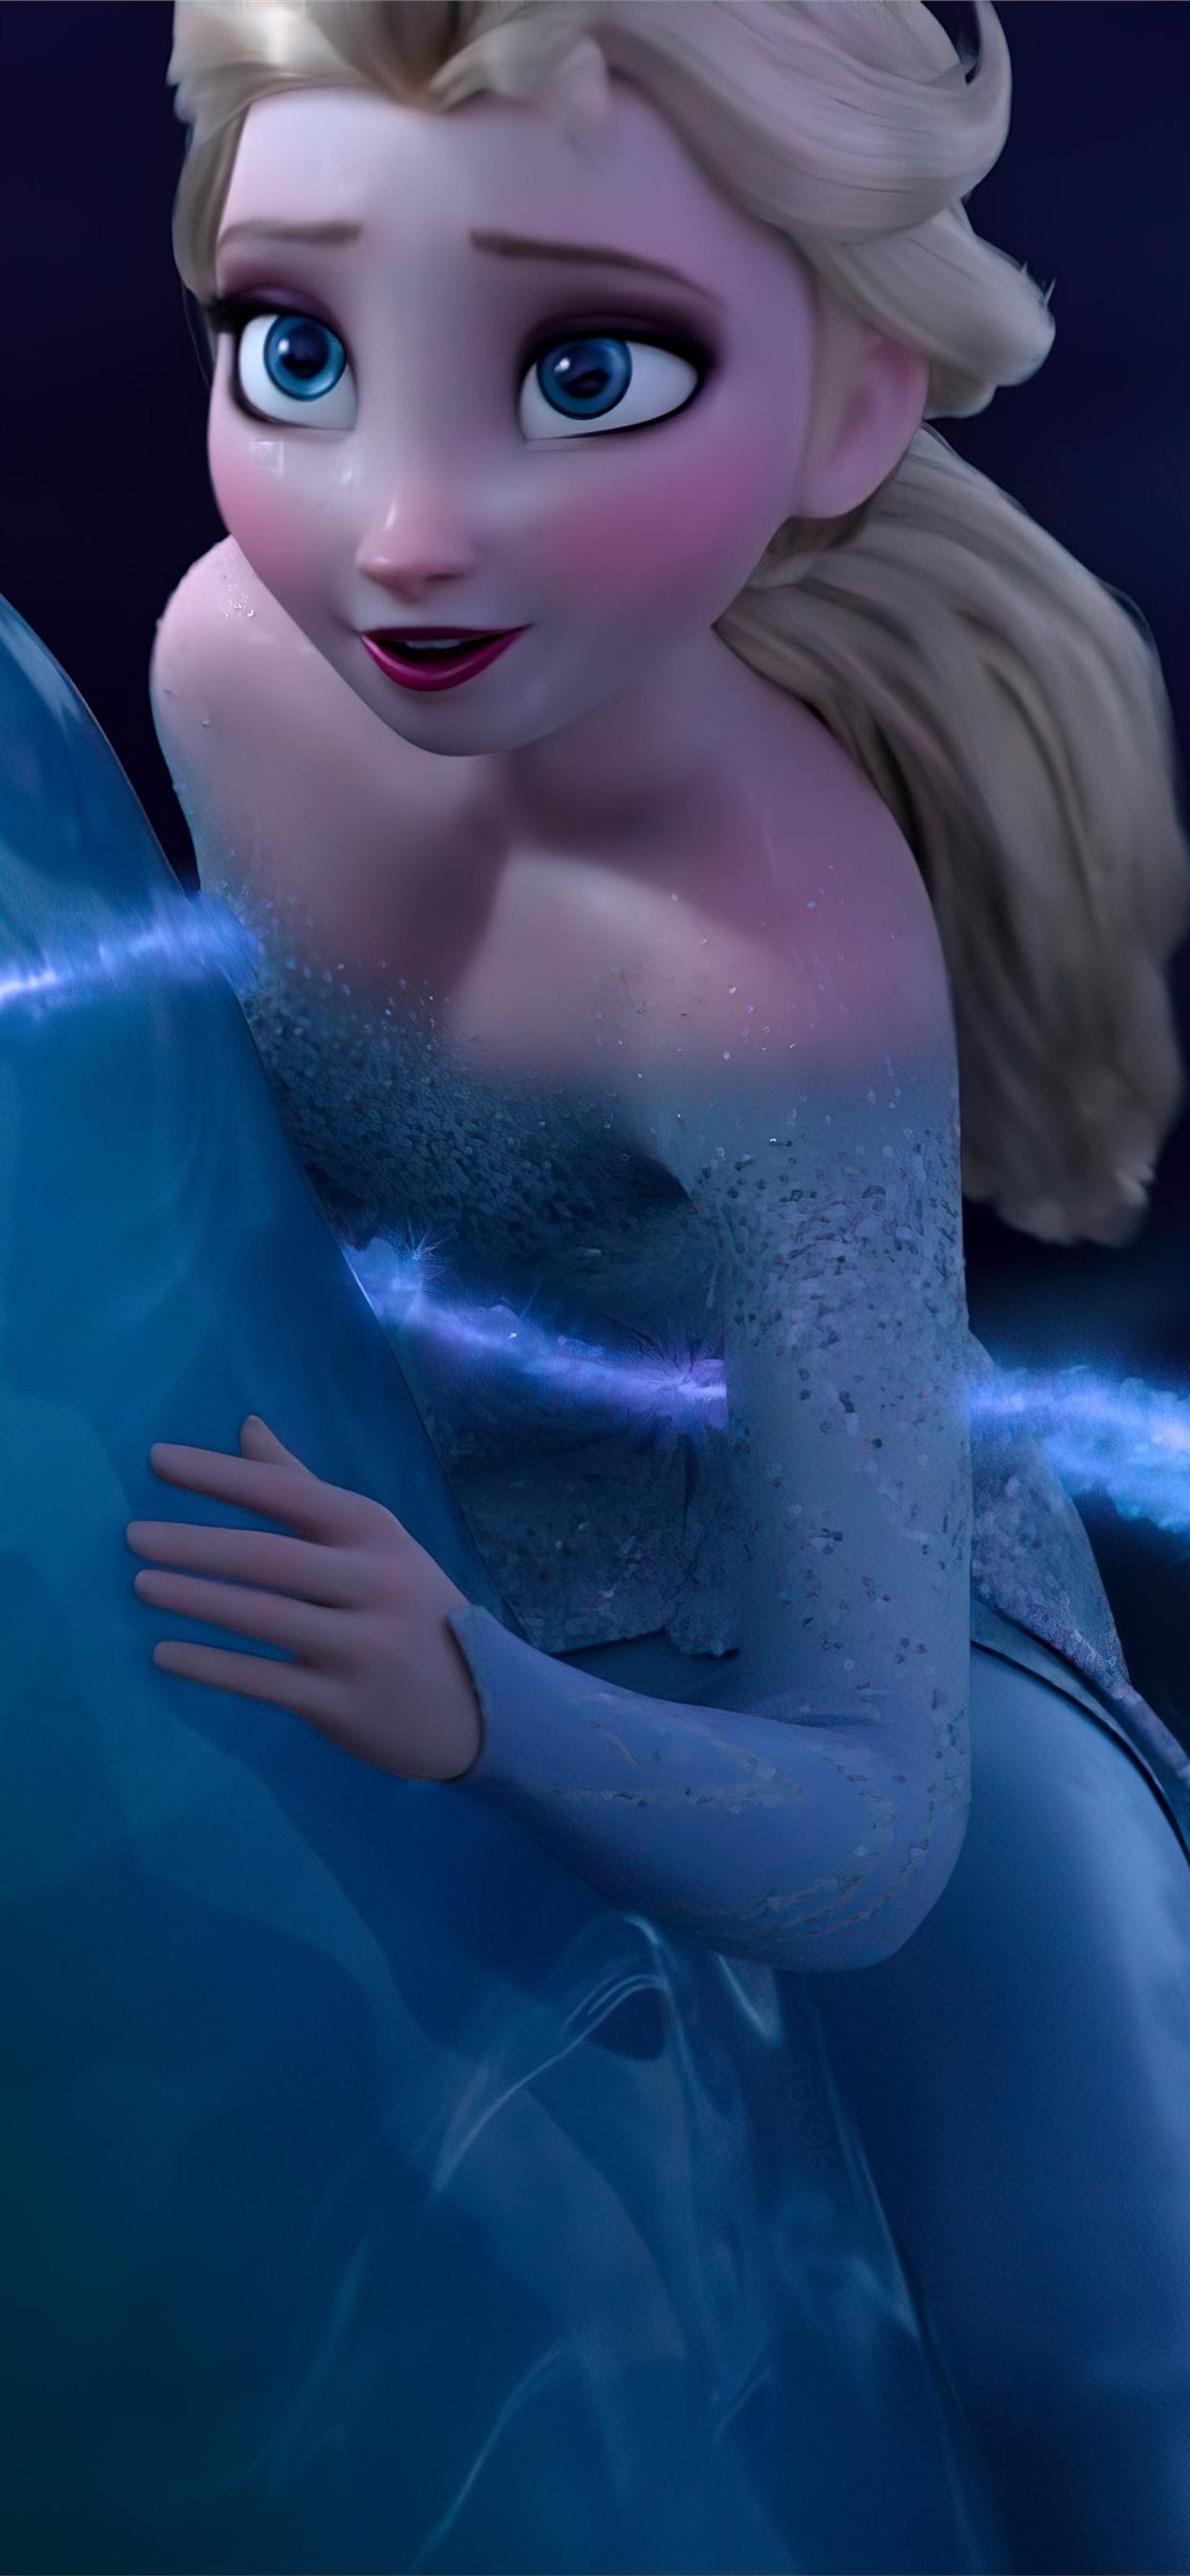 Frozen 2 Elsa Wallpapers  Papel parede Elsa Frozen 2  Disney frozen elsa  art Disney frozen Disney princess frozen